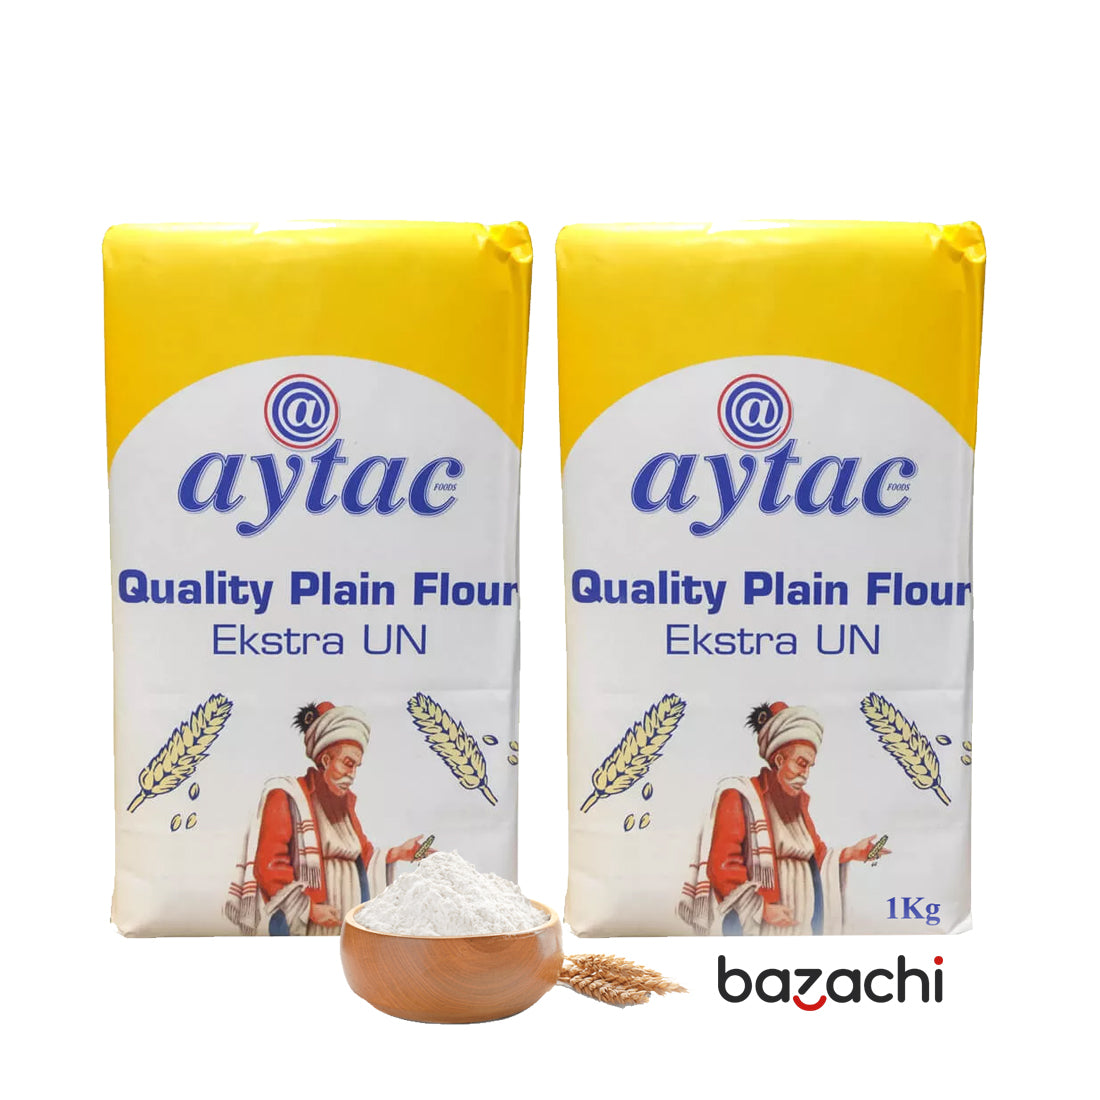 Aytac All Purpose Quality Plain Flour 1 Kg